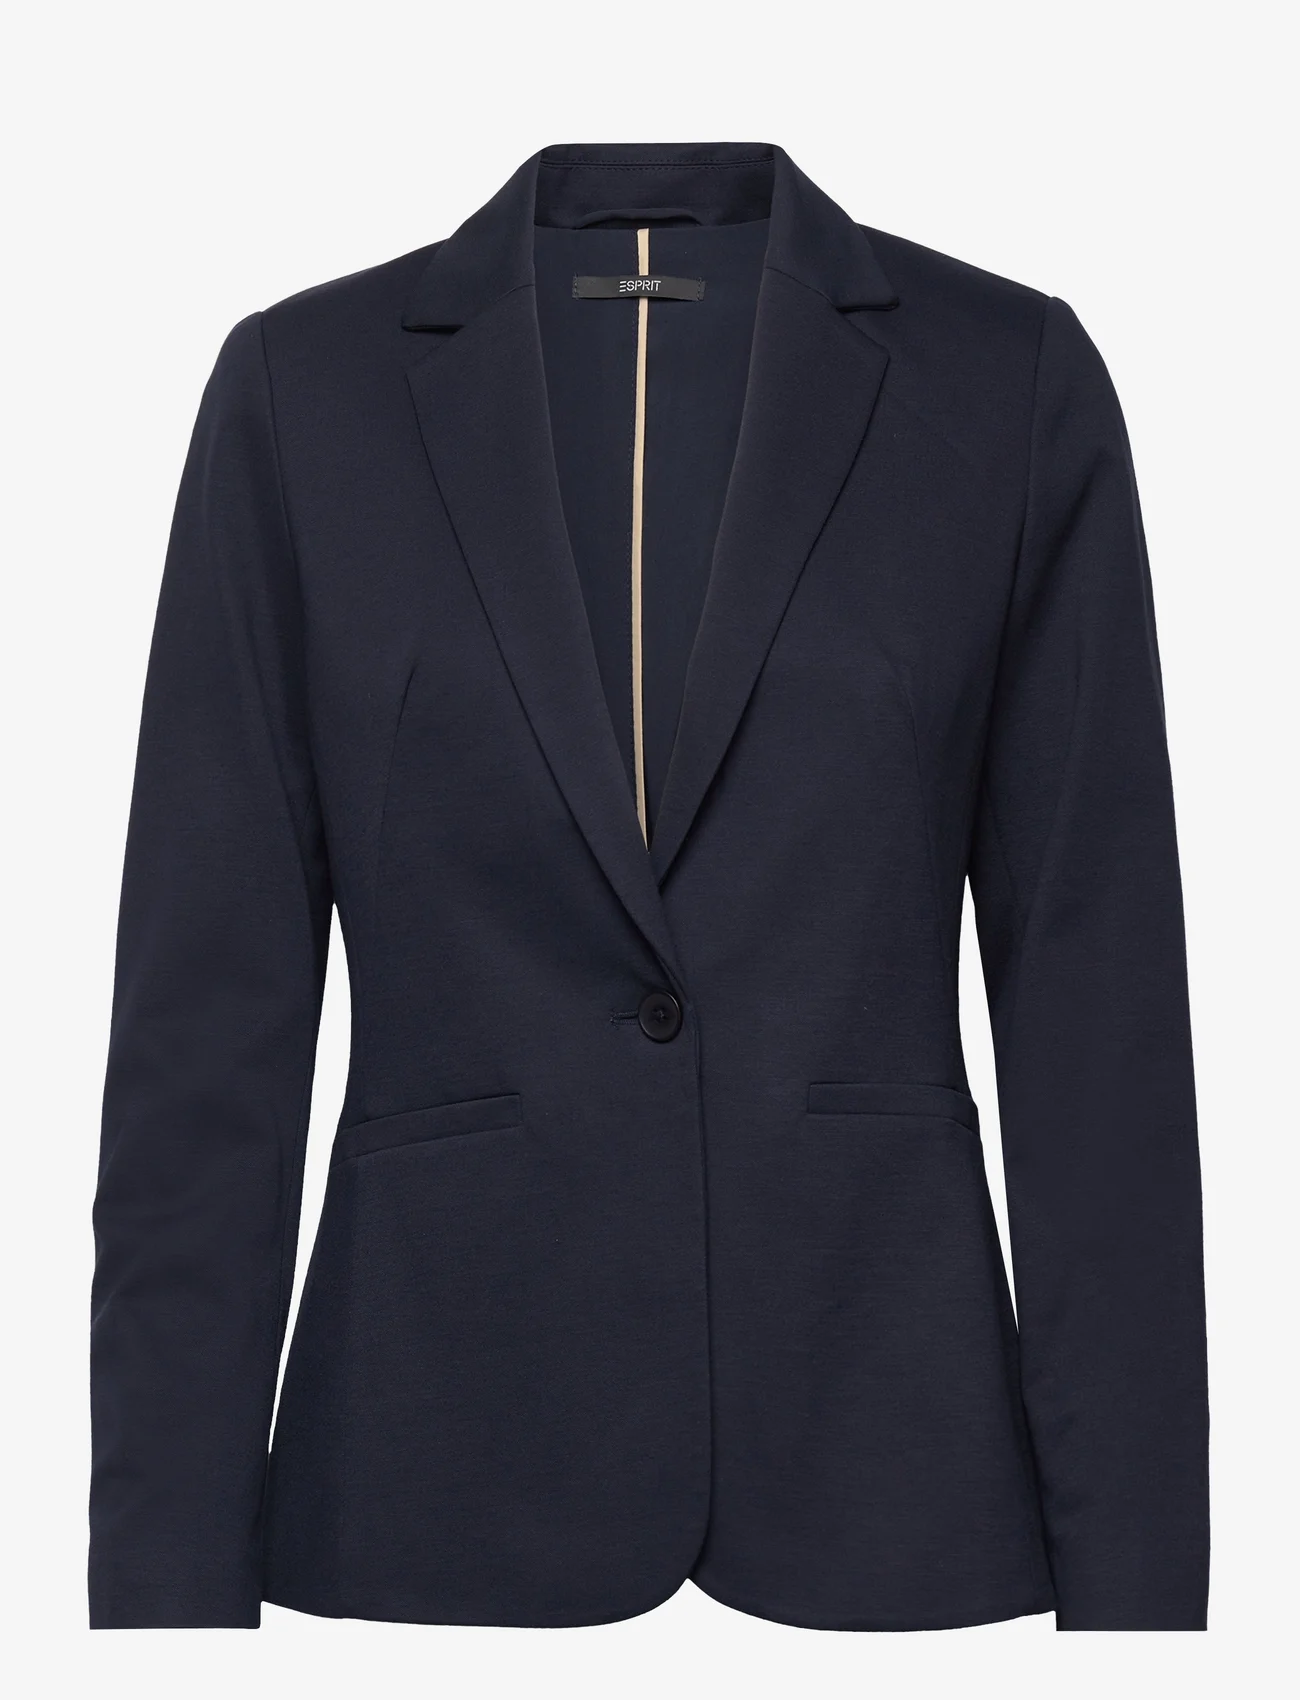 Esprit Collection - Blazers woven - odzież imprezowa w cenach outletowych - navy - 0